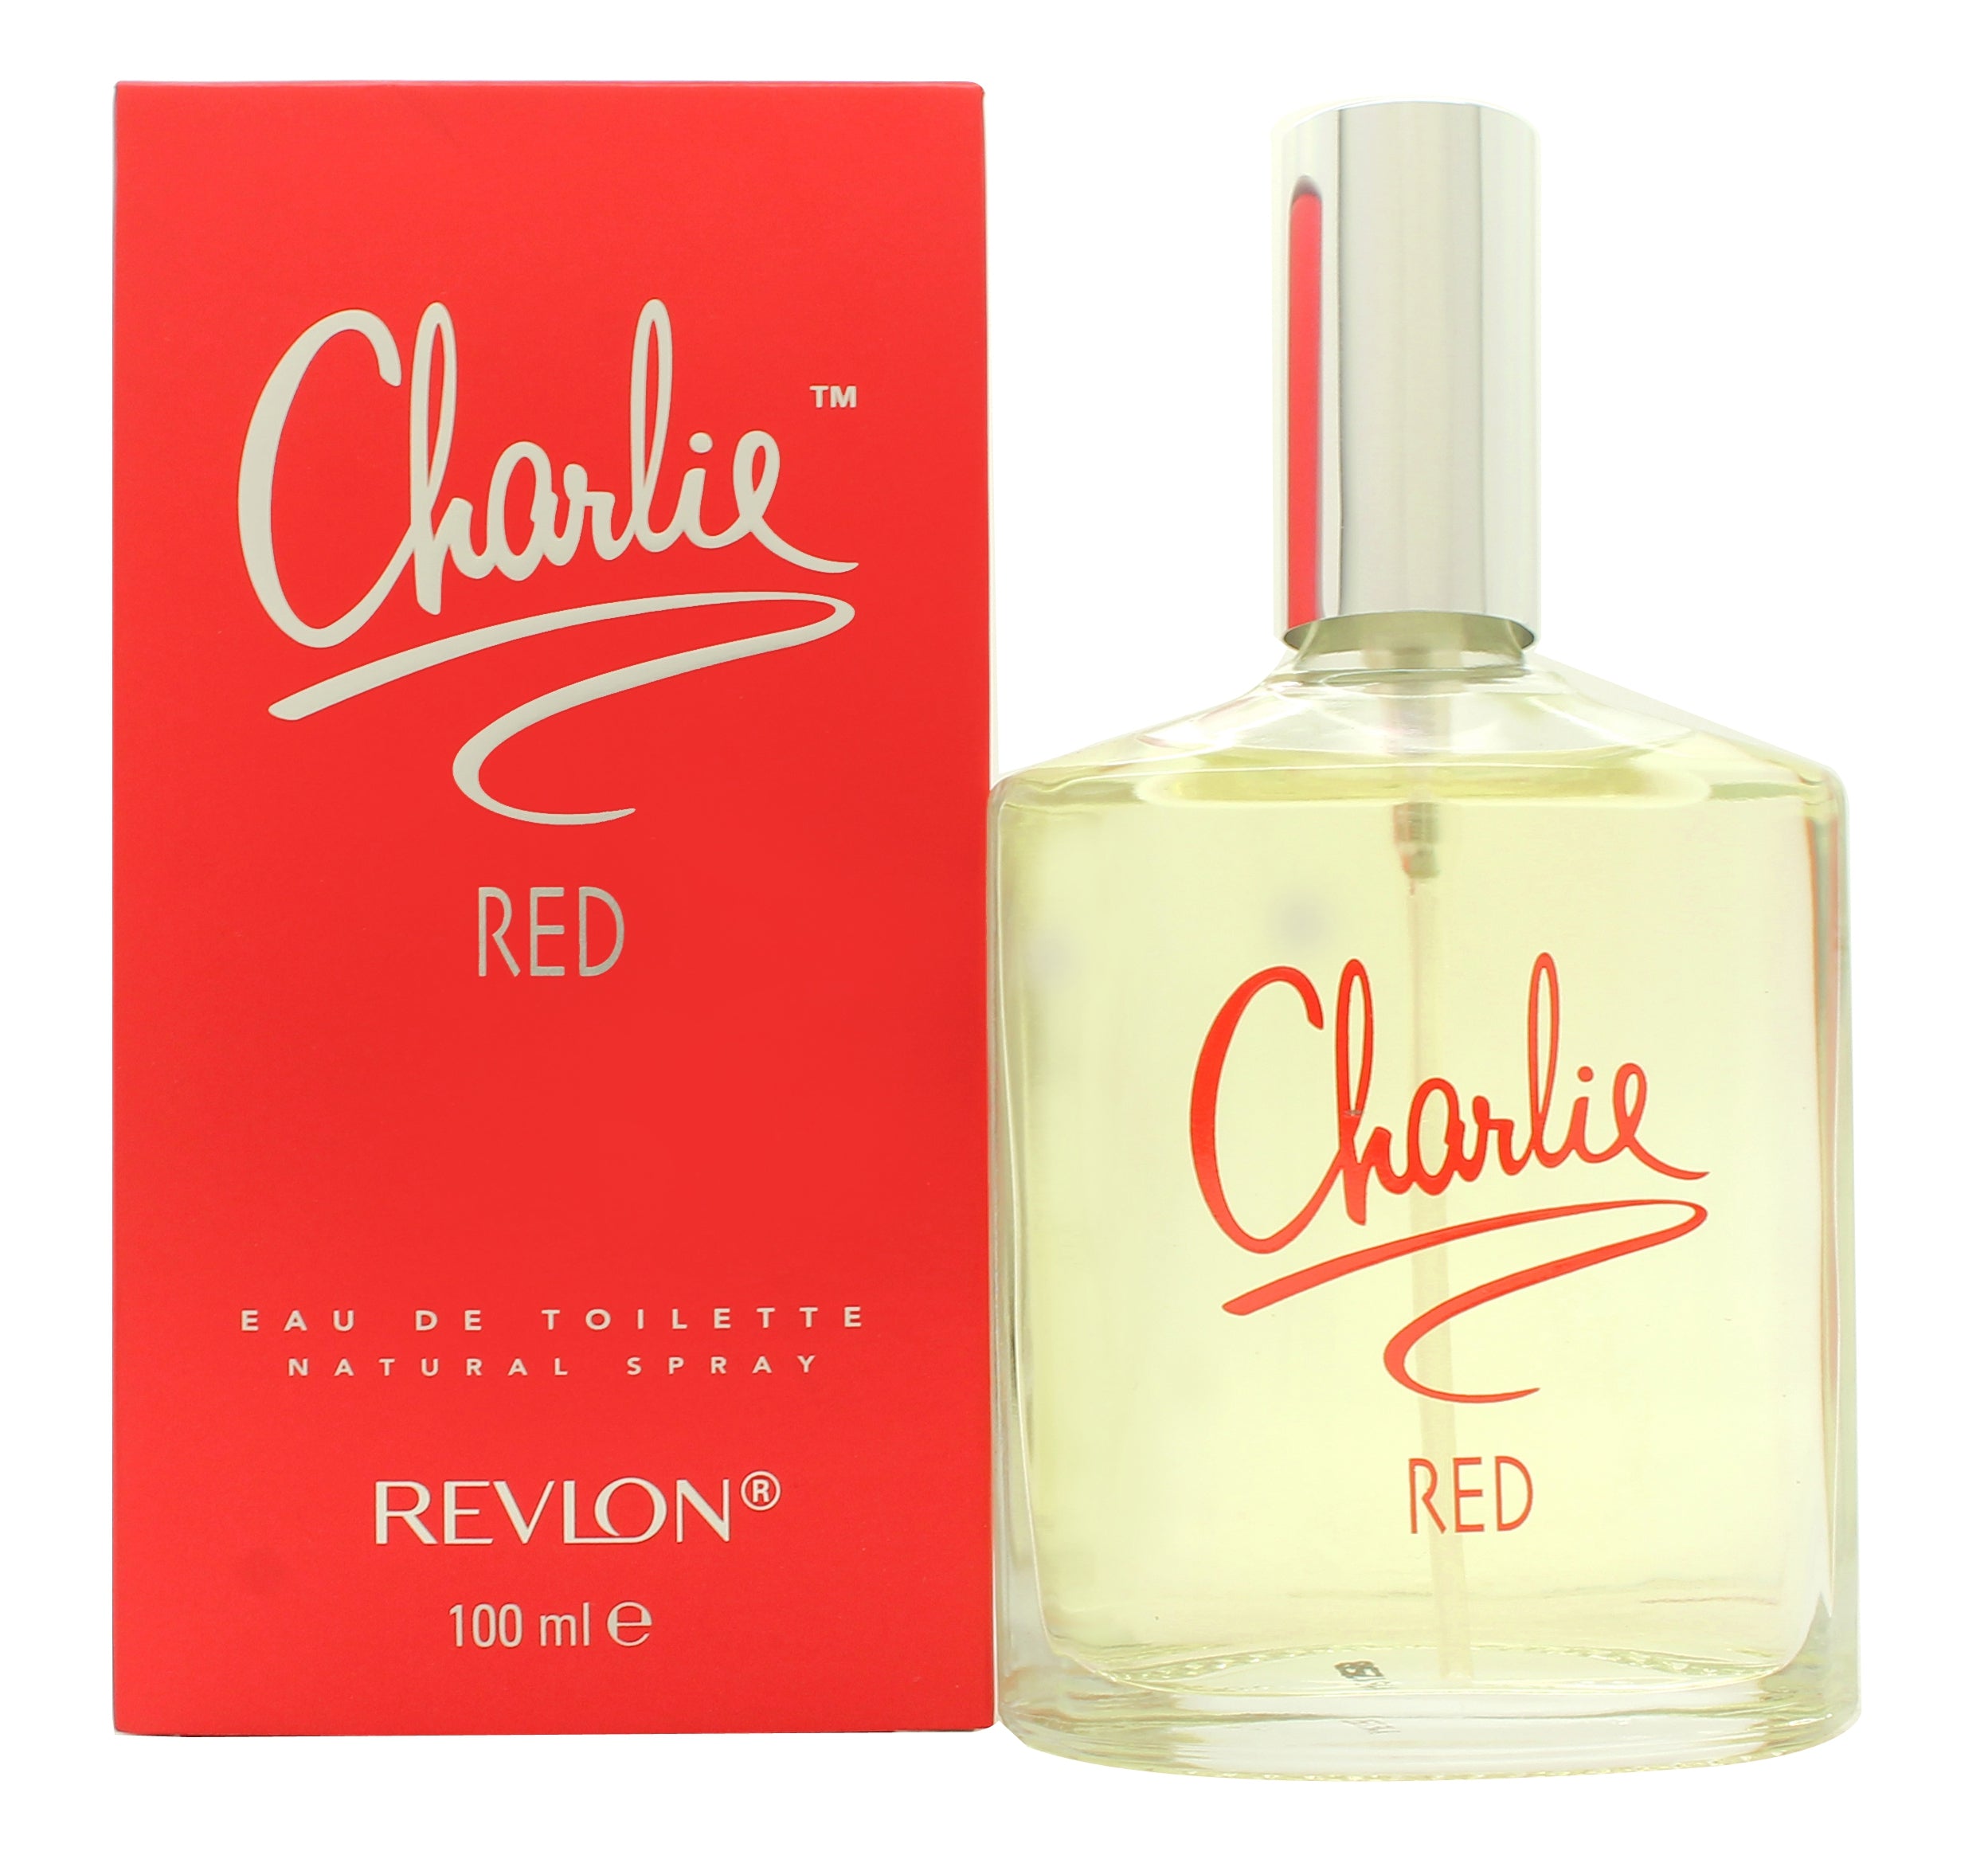 View Revlon Charlie Red Eau de Toilette 100ml Spray information